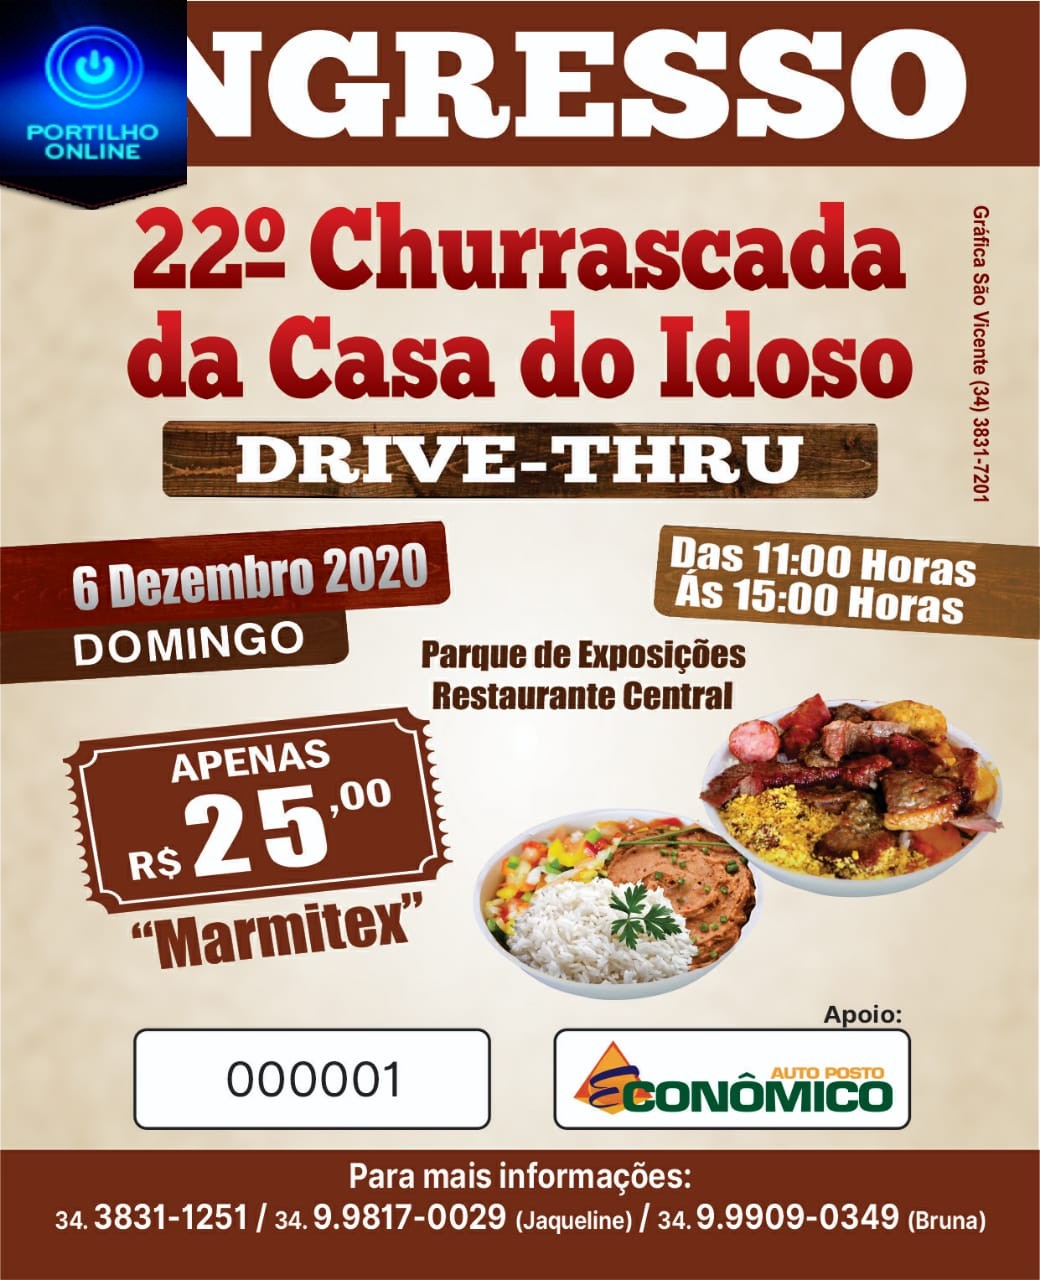 👉👍🙏👏🤙🍴🍗🍖🥩🍟22º CHURRASCADA DA CASA DO IDOSO. DRIVE THRU.